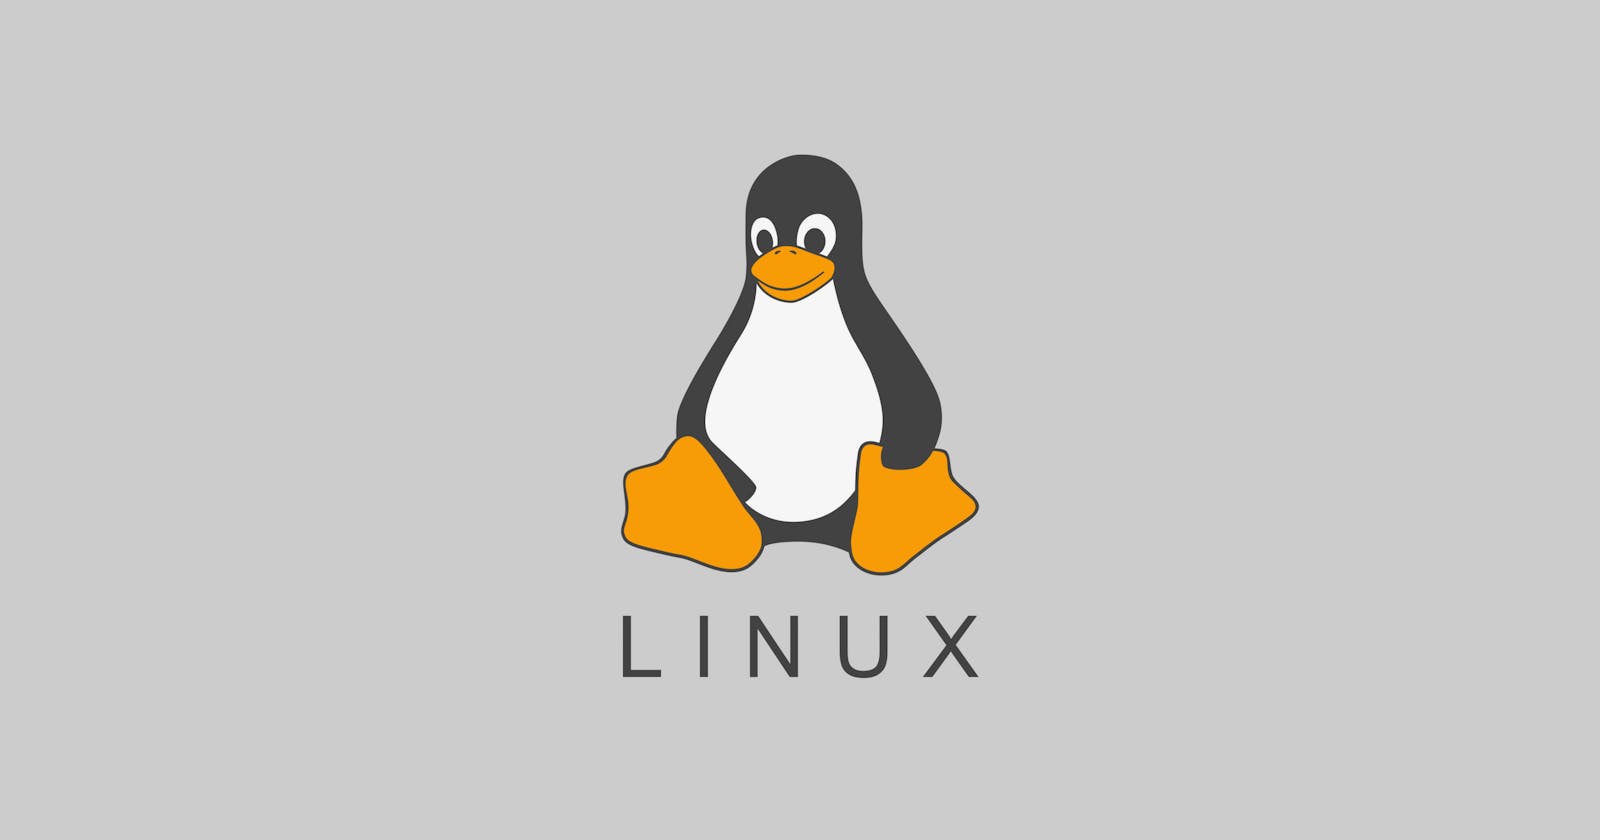 Basic Linux Commands Part 1